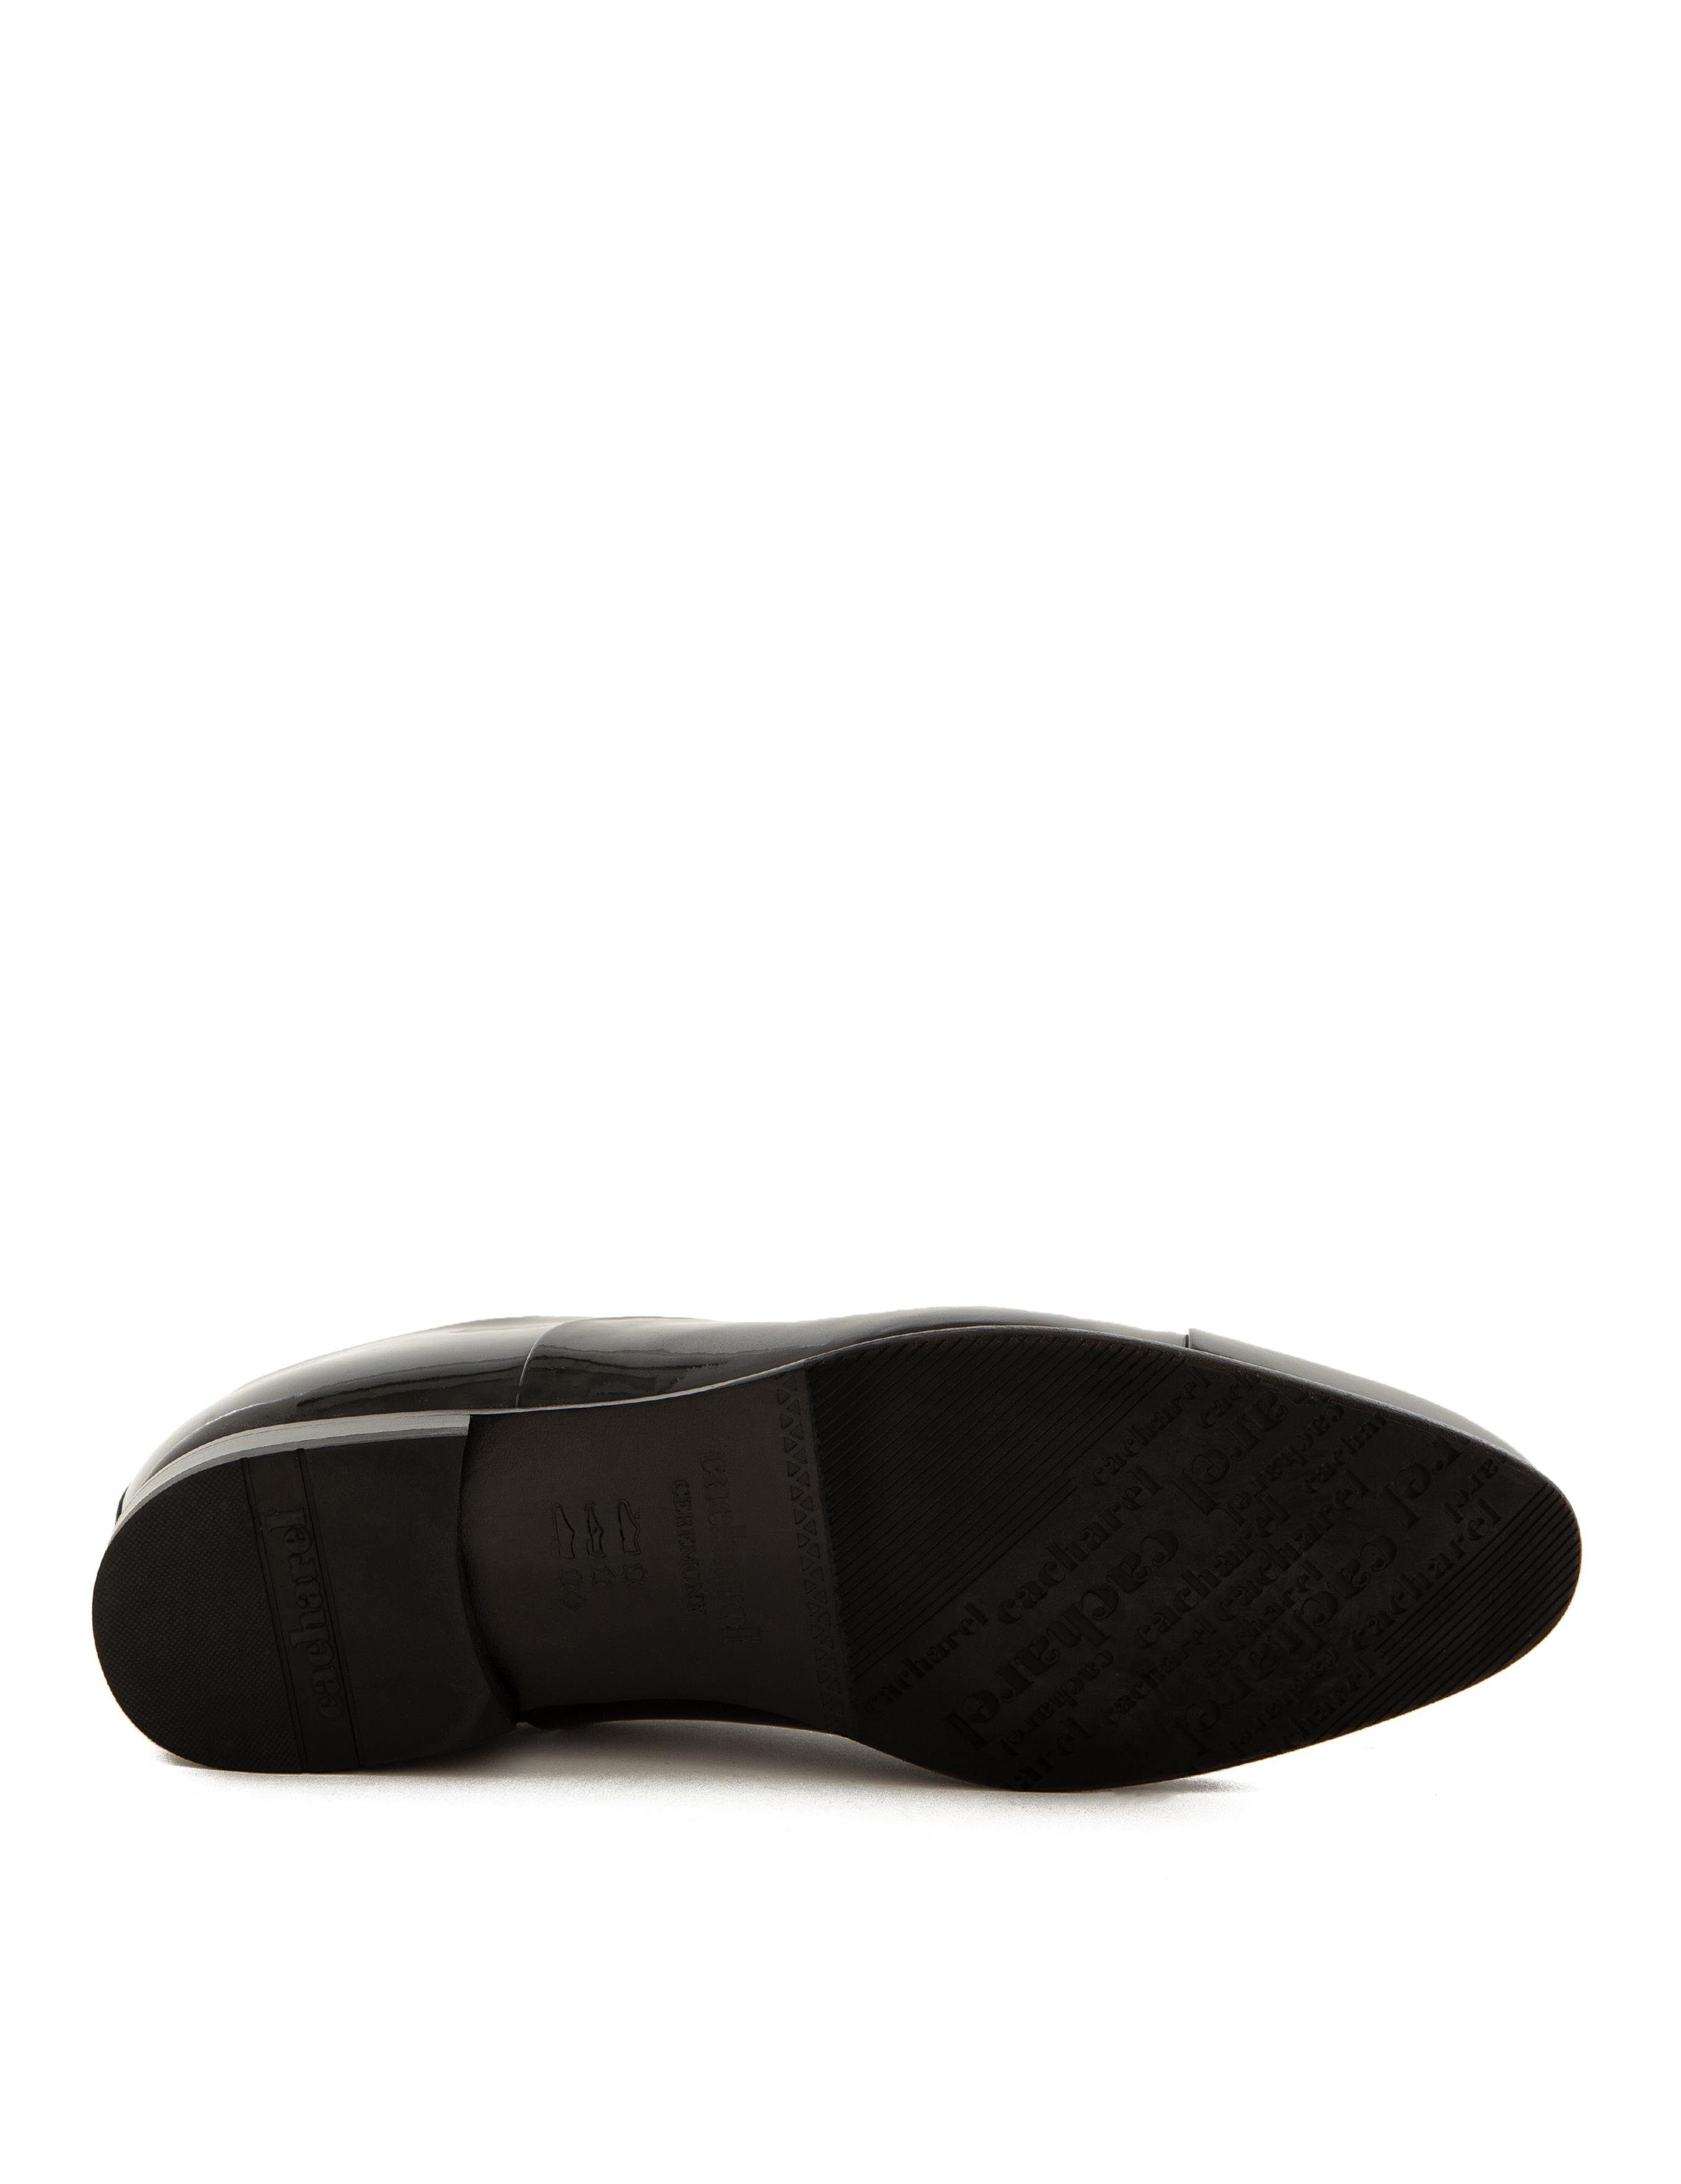 Siyah Klasik Ayakkabı - 50216950002